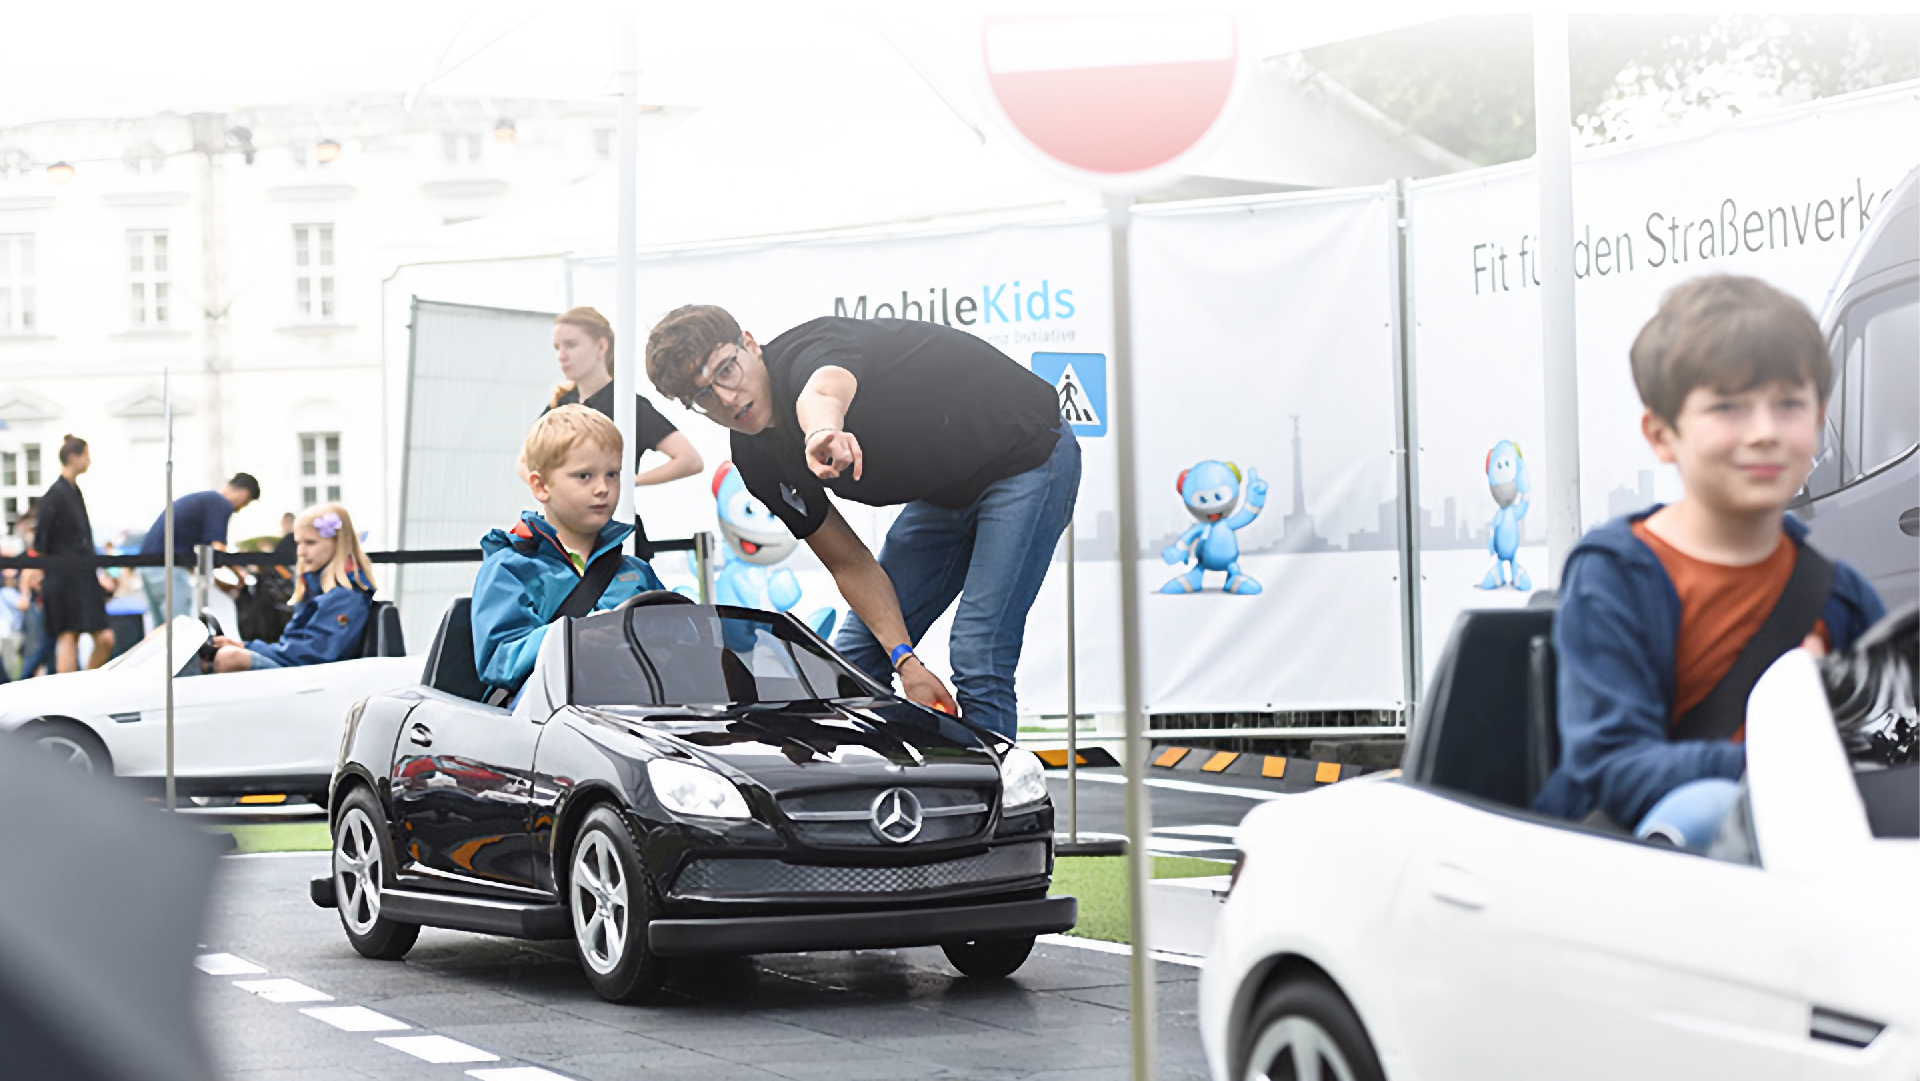 Kinder fahren Spielautos im Rahmen von MobileKids